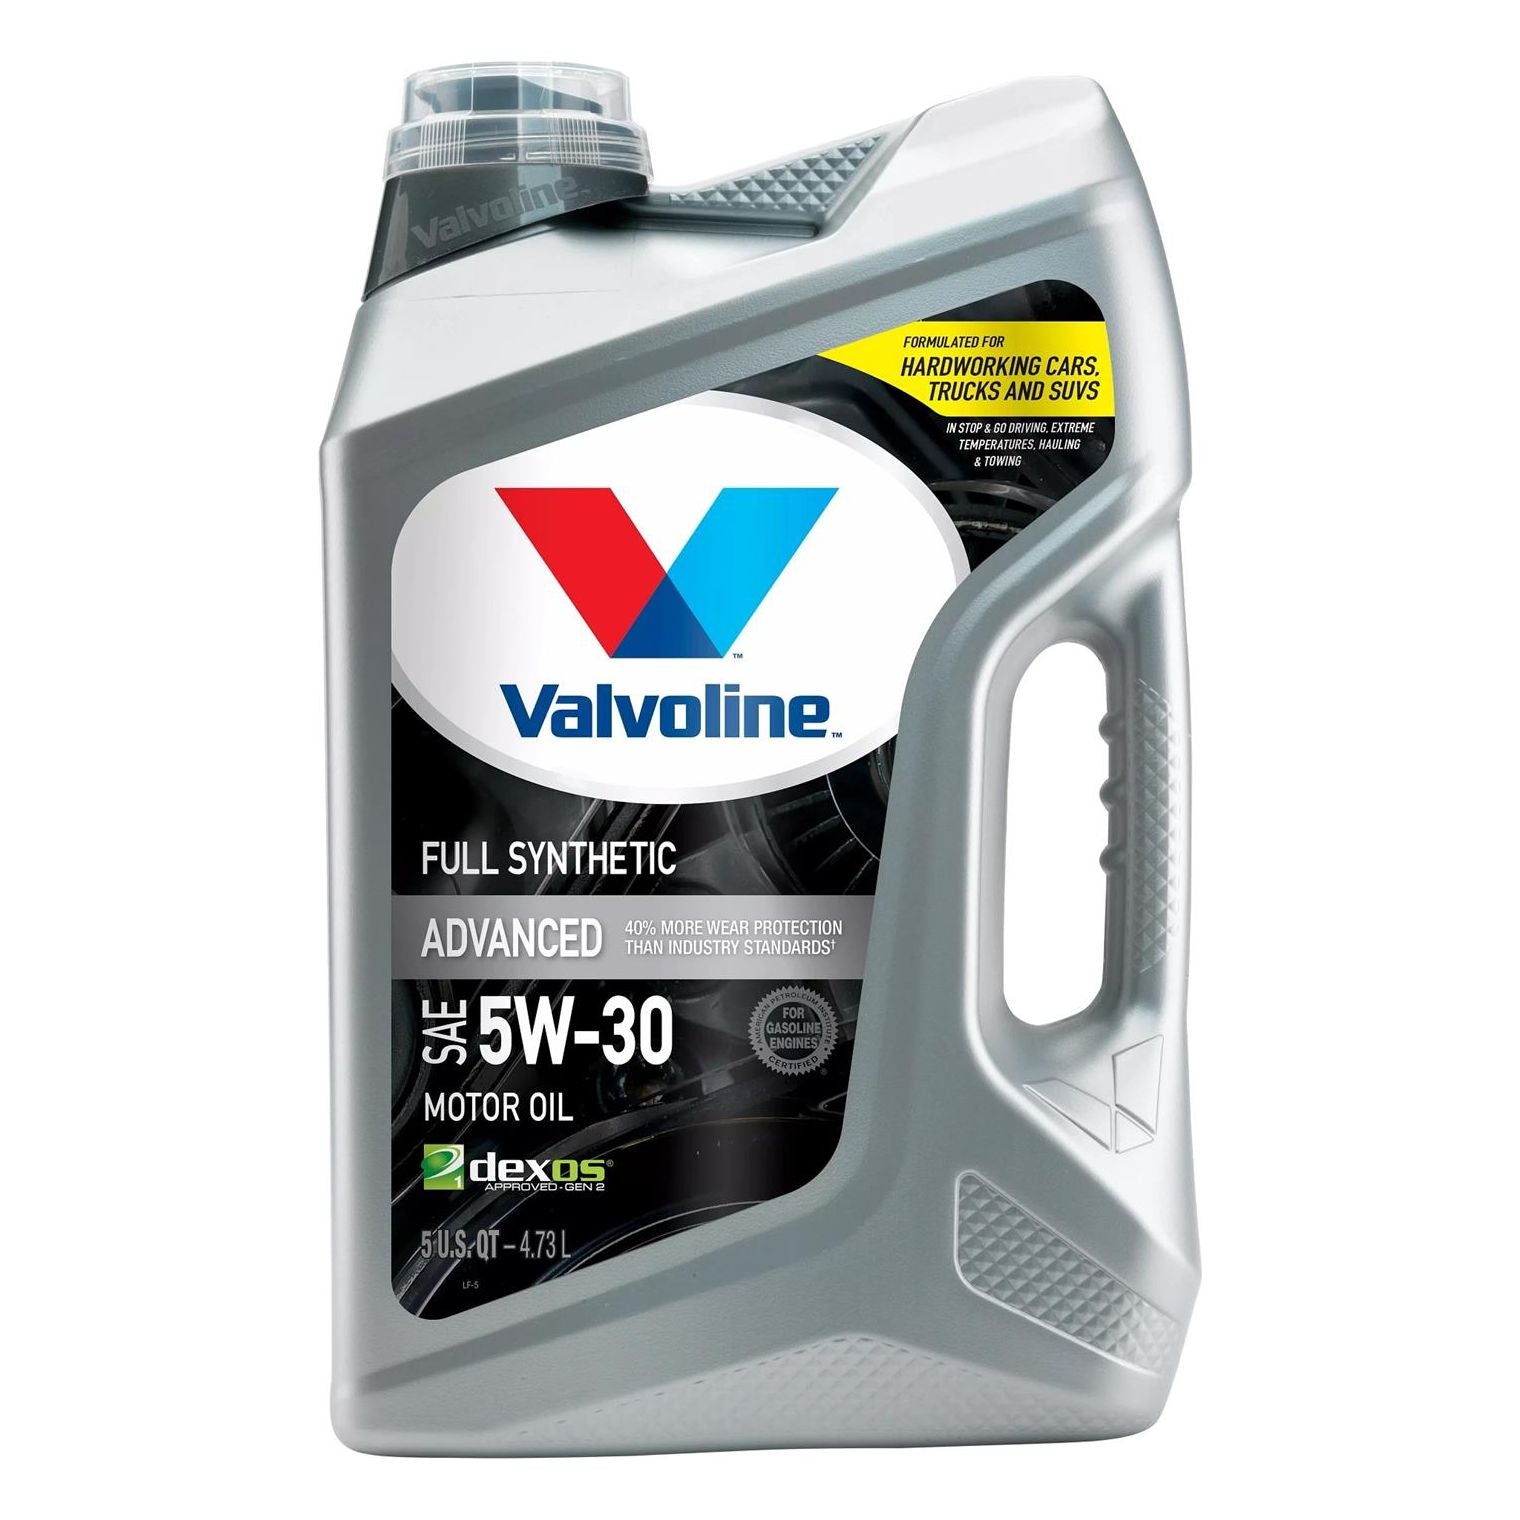 Valvoline Advanced Full Synthetic Standard Full Synthetic Engine Oil 5W-30 5 Quart 881164